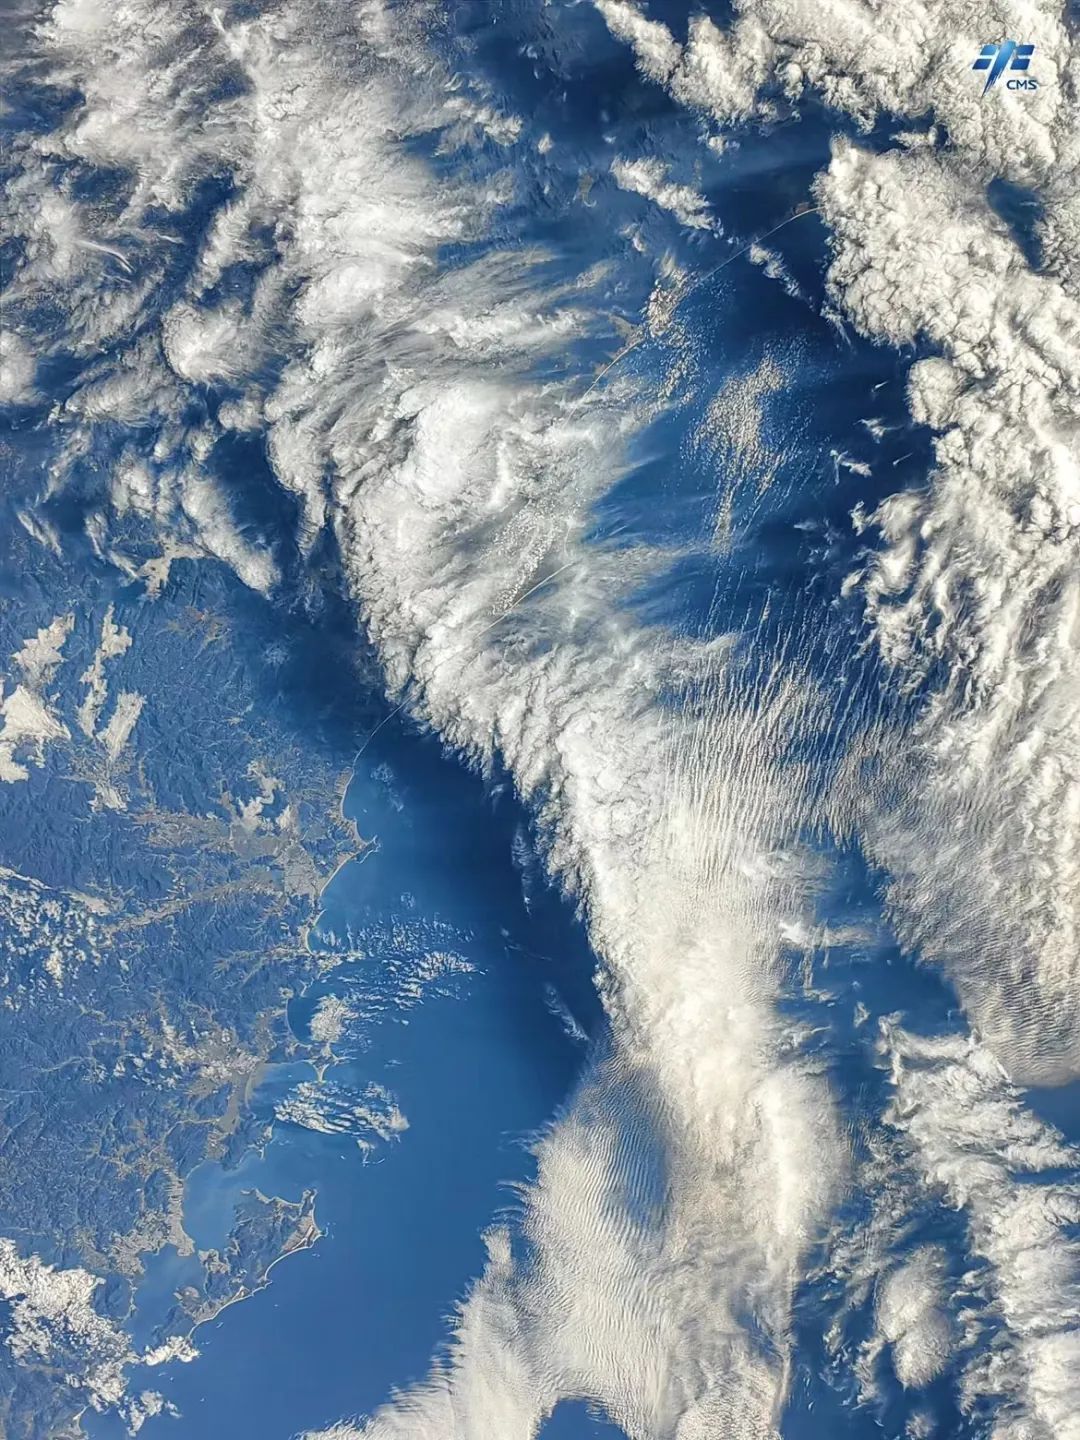 云浪·沿海地区。航天员刘洋拍摄